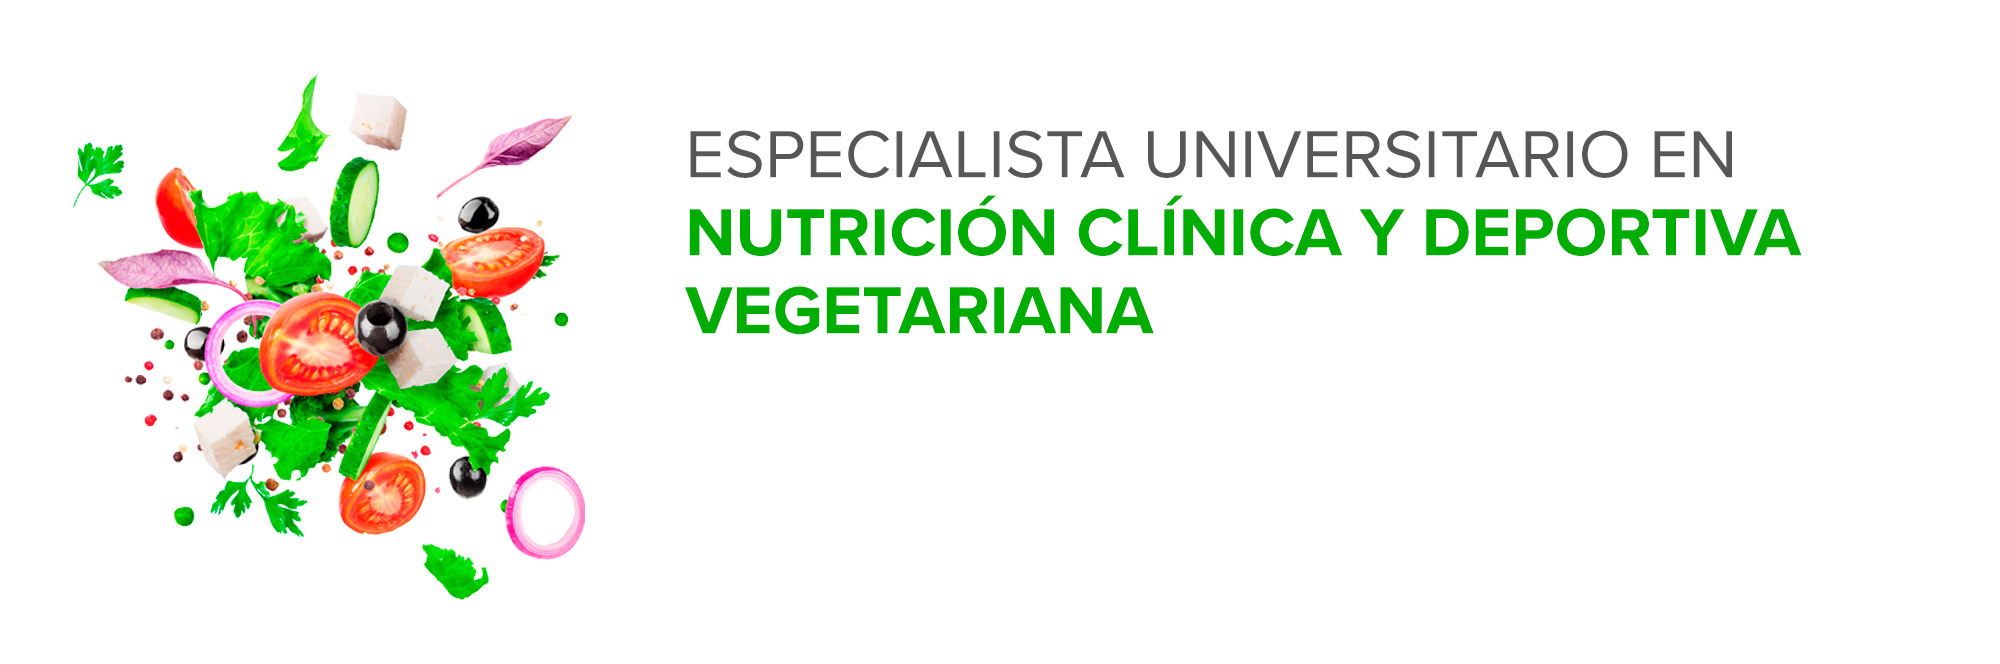 Especialista Universitario en Nutrición Clínica y Deportiva Vegetariana (VEGE1)